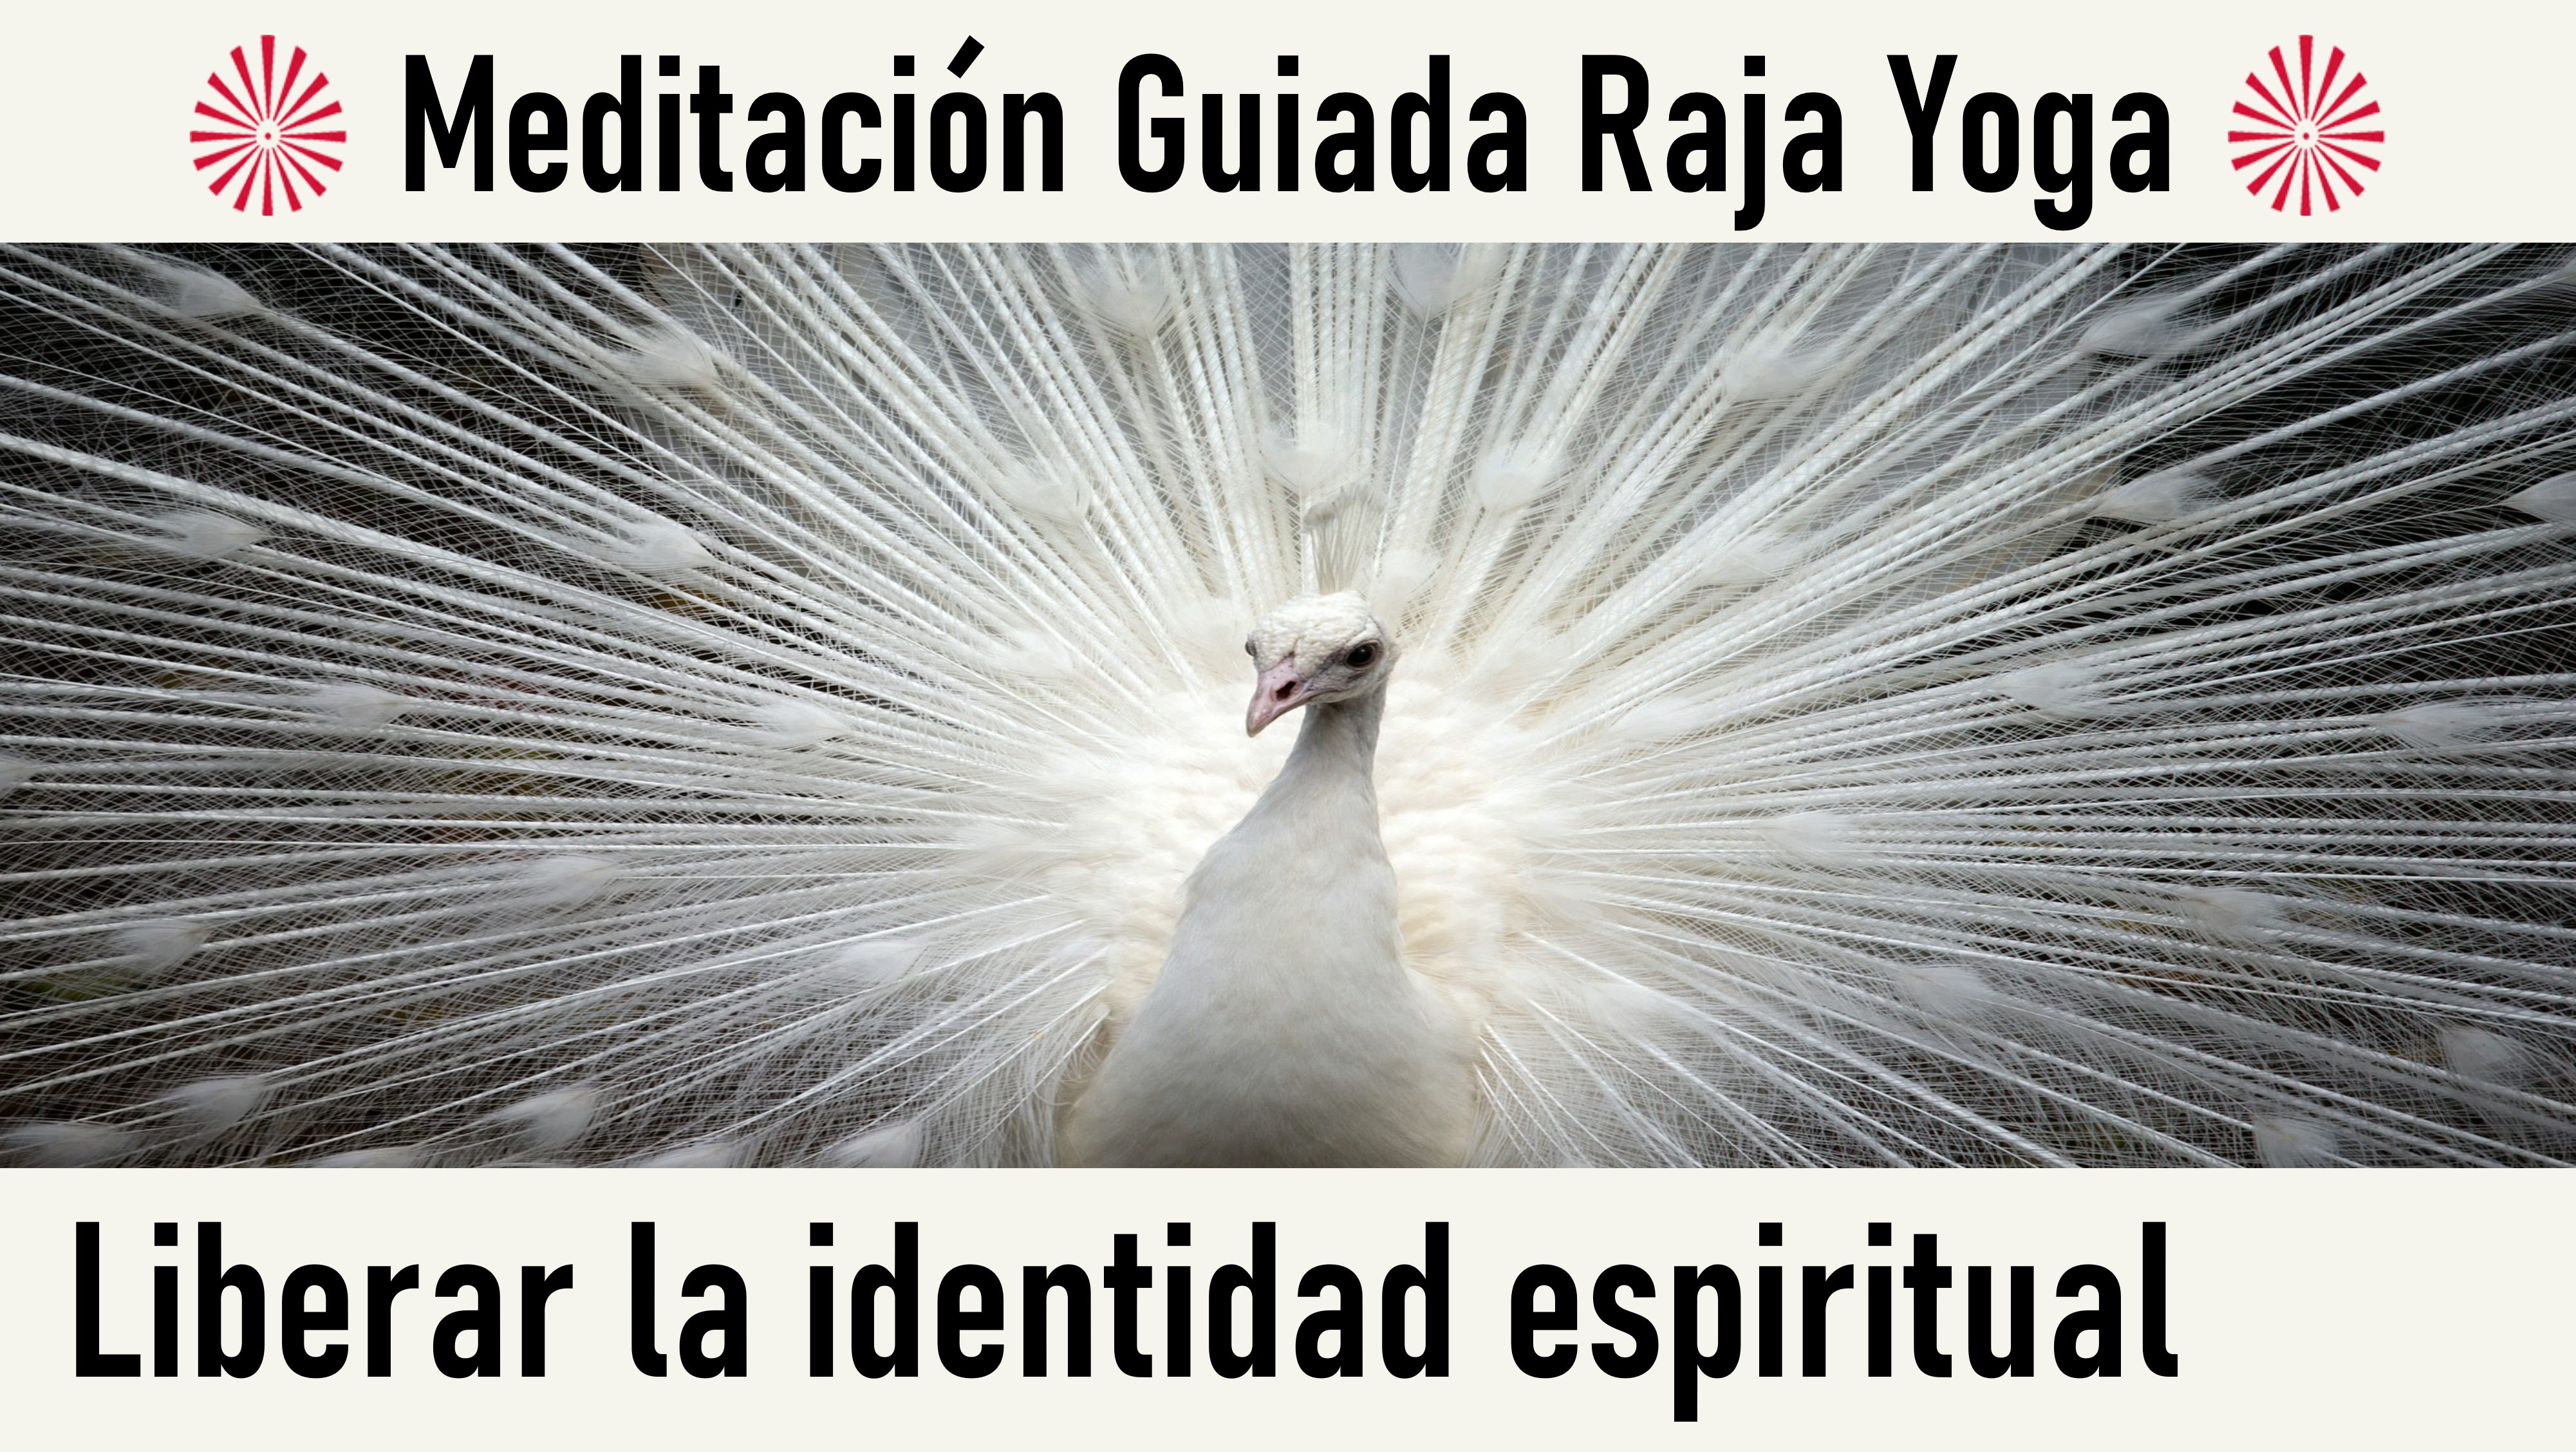 Meditación Raja Yoga:  Liberar la identidad espiritual  (21 Mayo 2020) On-line desde Mallorca